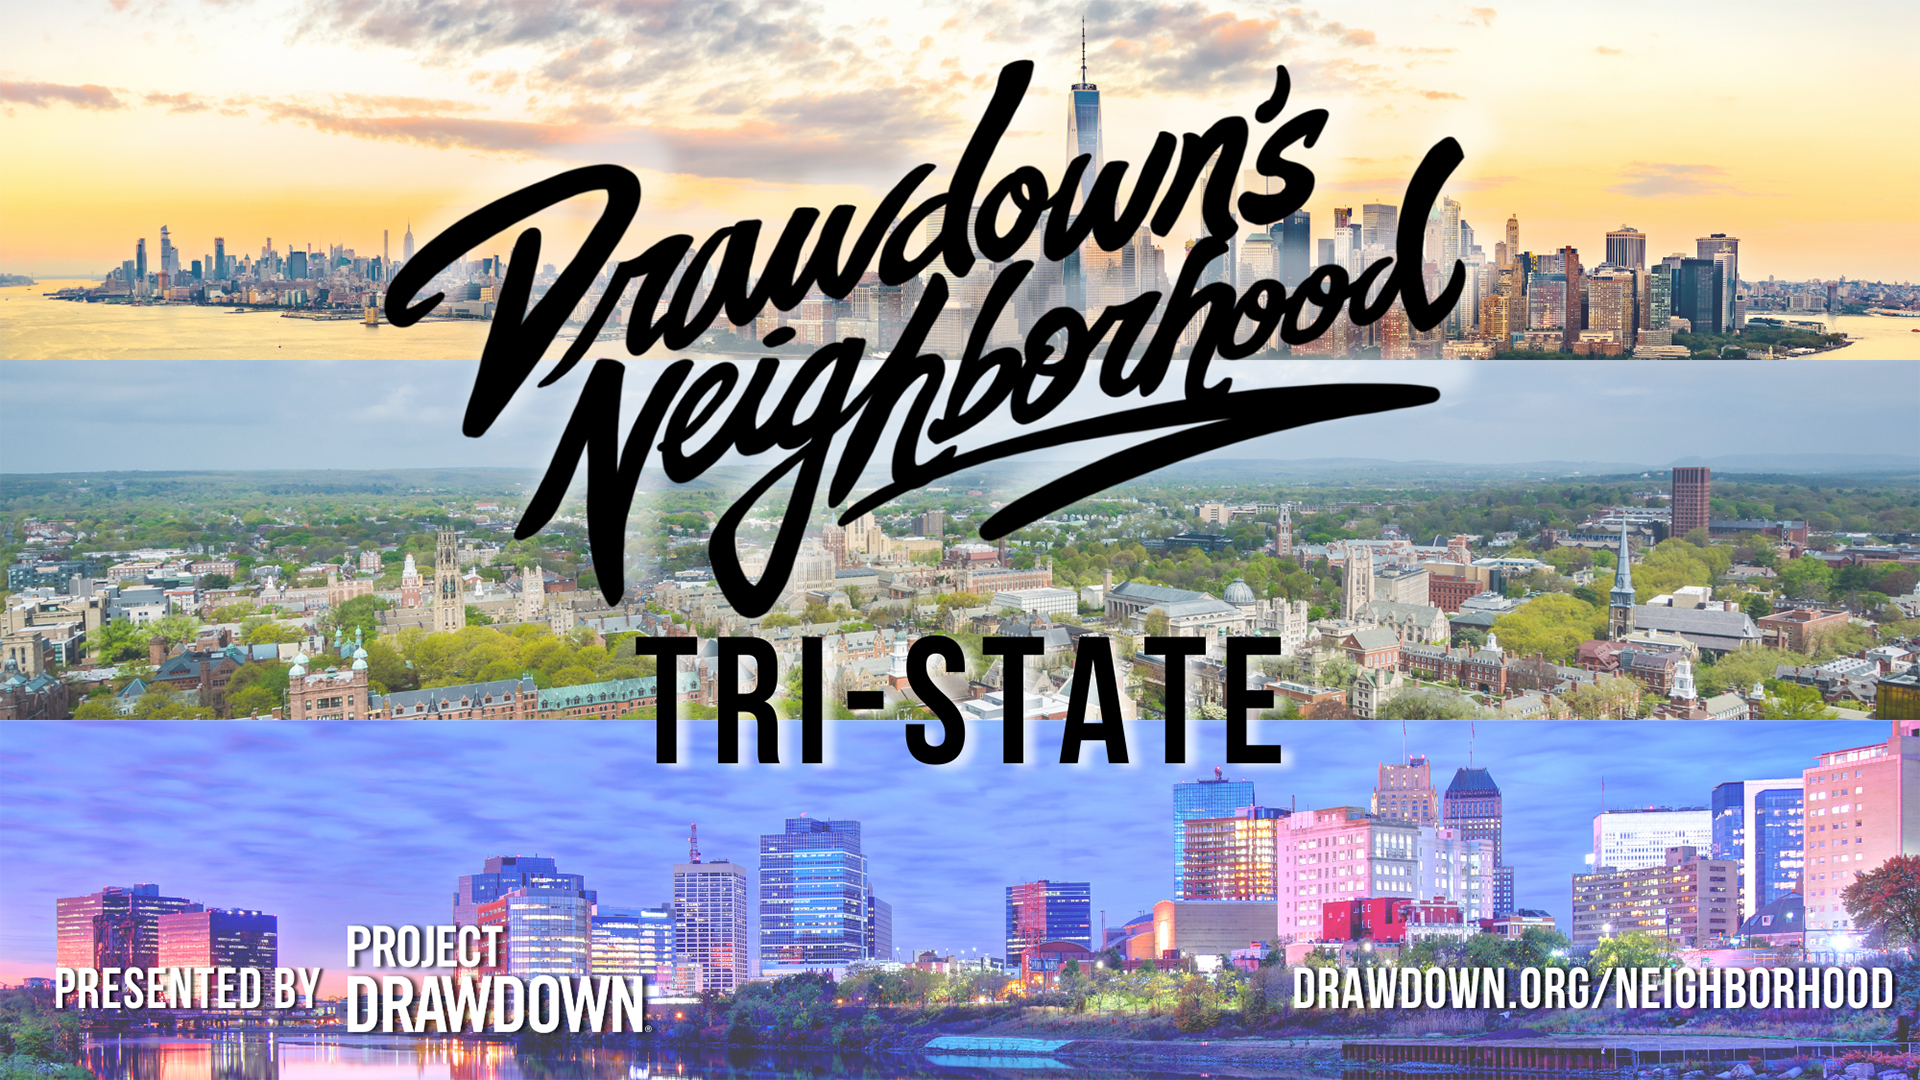 Drawdown’s Neighborhood